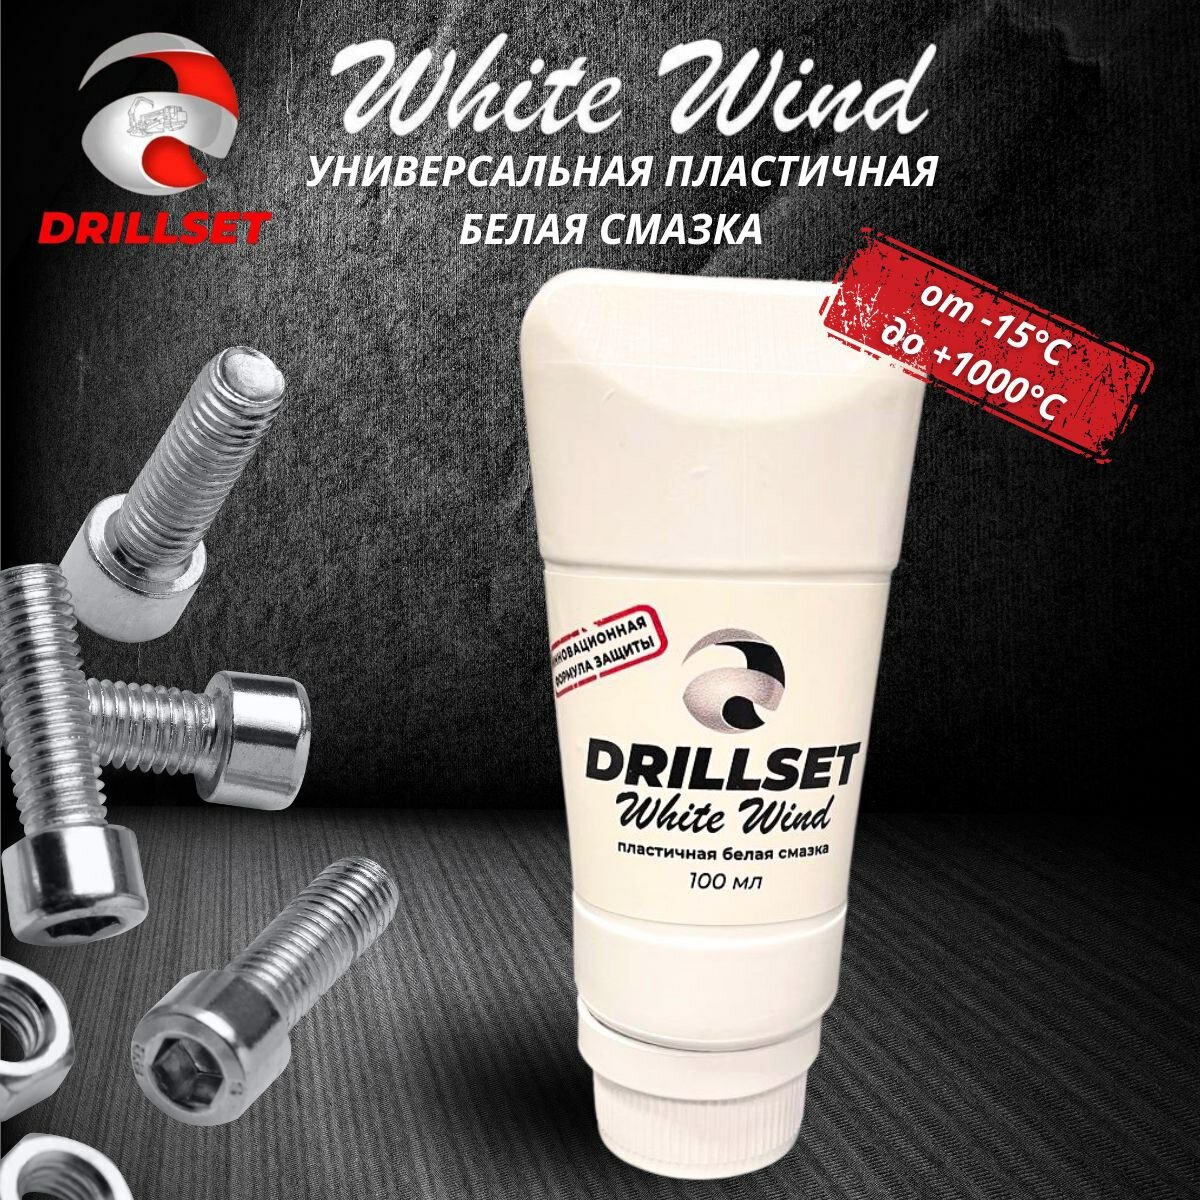 Универсальная пластичная белая смазка DRILLSET WHITE WIND 100 мл. в тубе